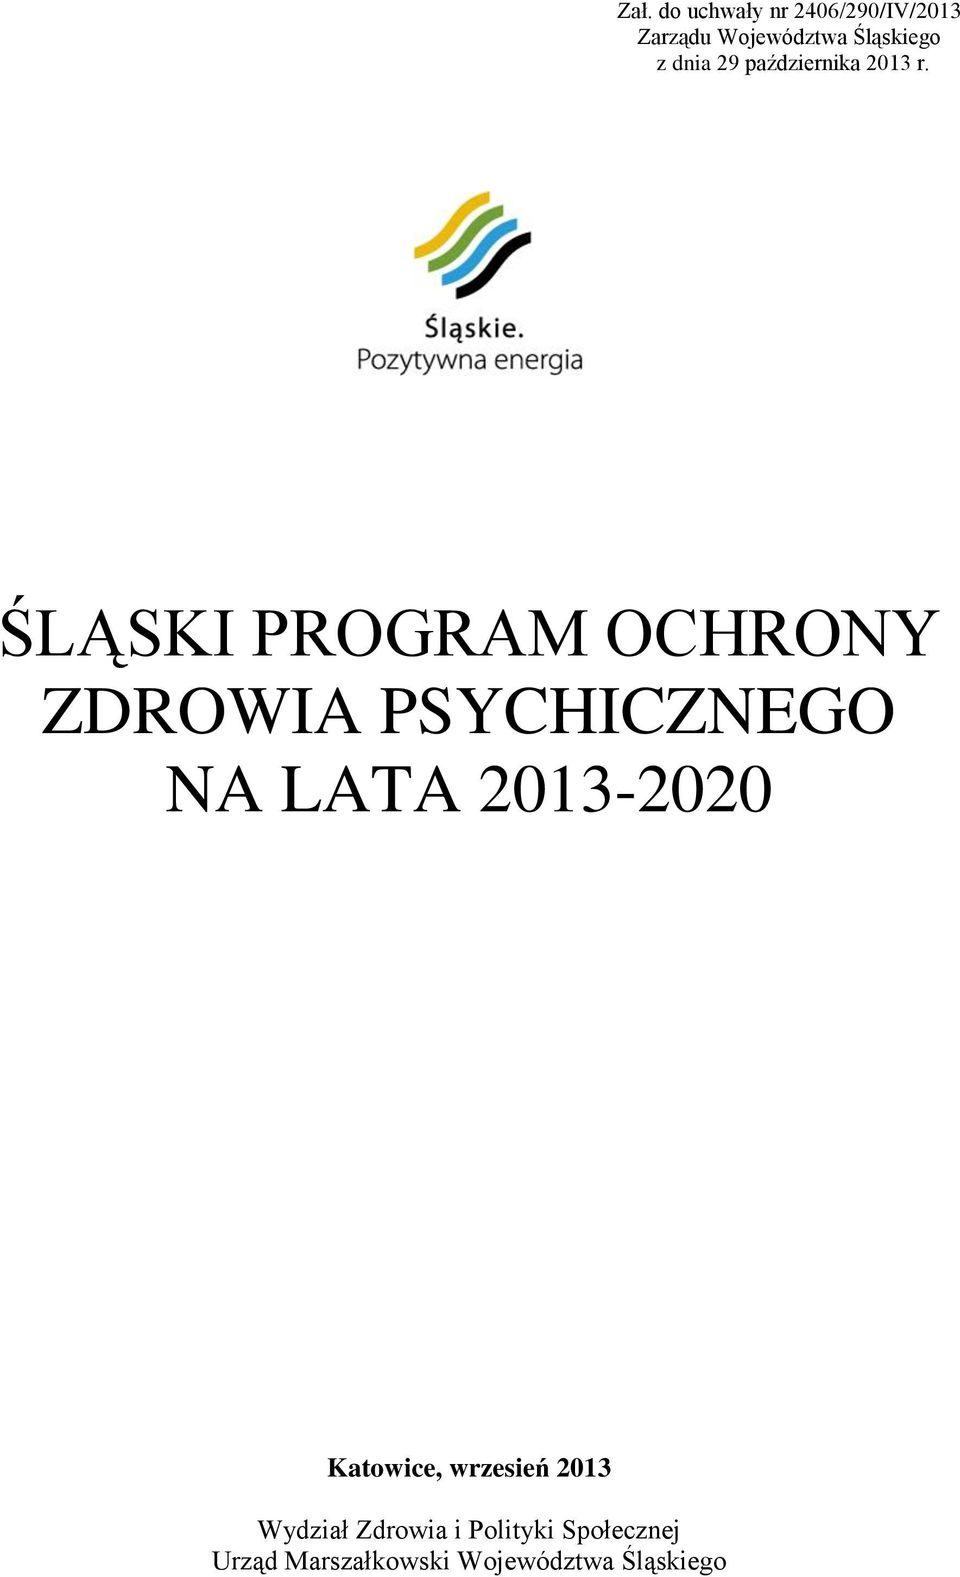 ŚLĄSKI PROGRAM OCHRONY ZDROWIA PSYCHICZNEGO NA LATA 2013-2020